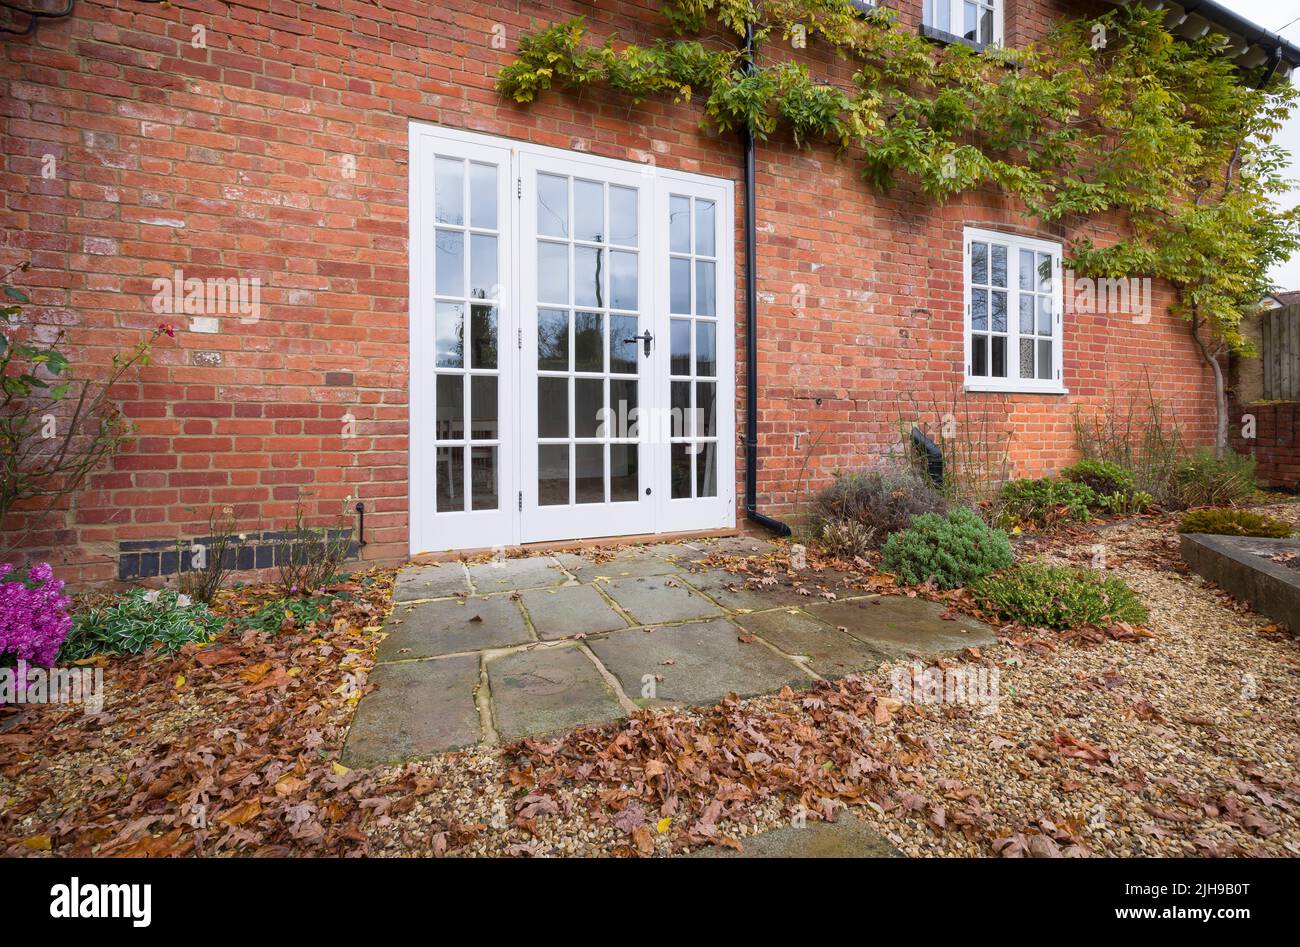 Portes-fenêtres en bois et patio en pierre de York dans un jardin paysager britannique avec feuilles d'automne Banque D'Images